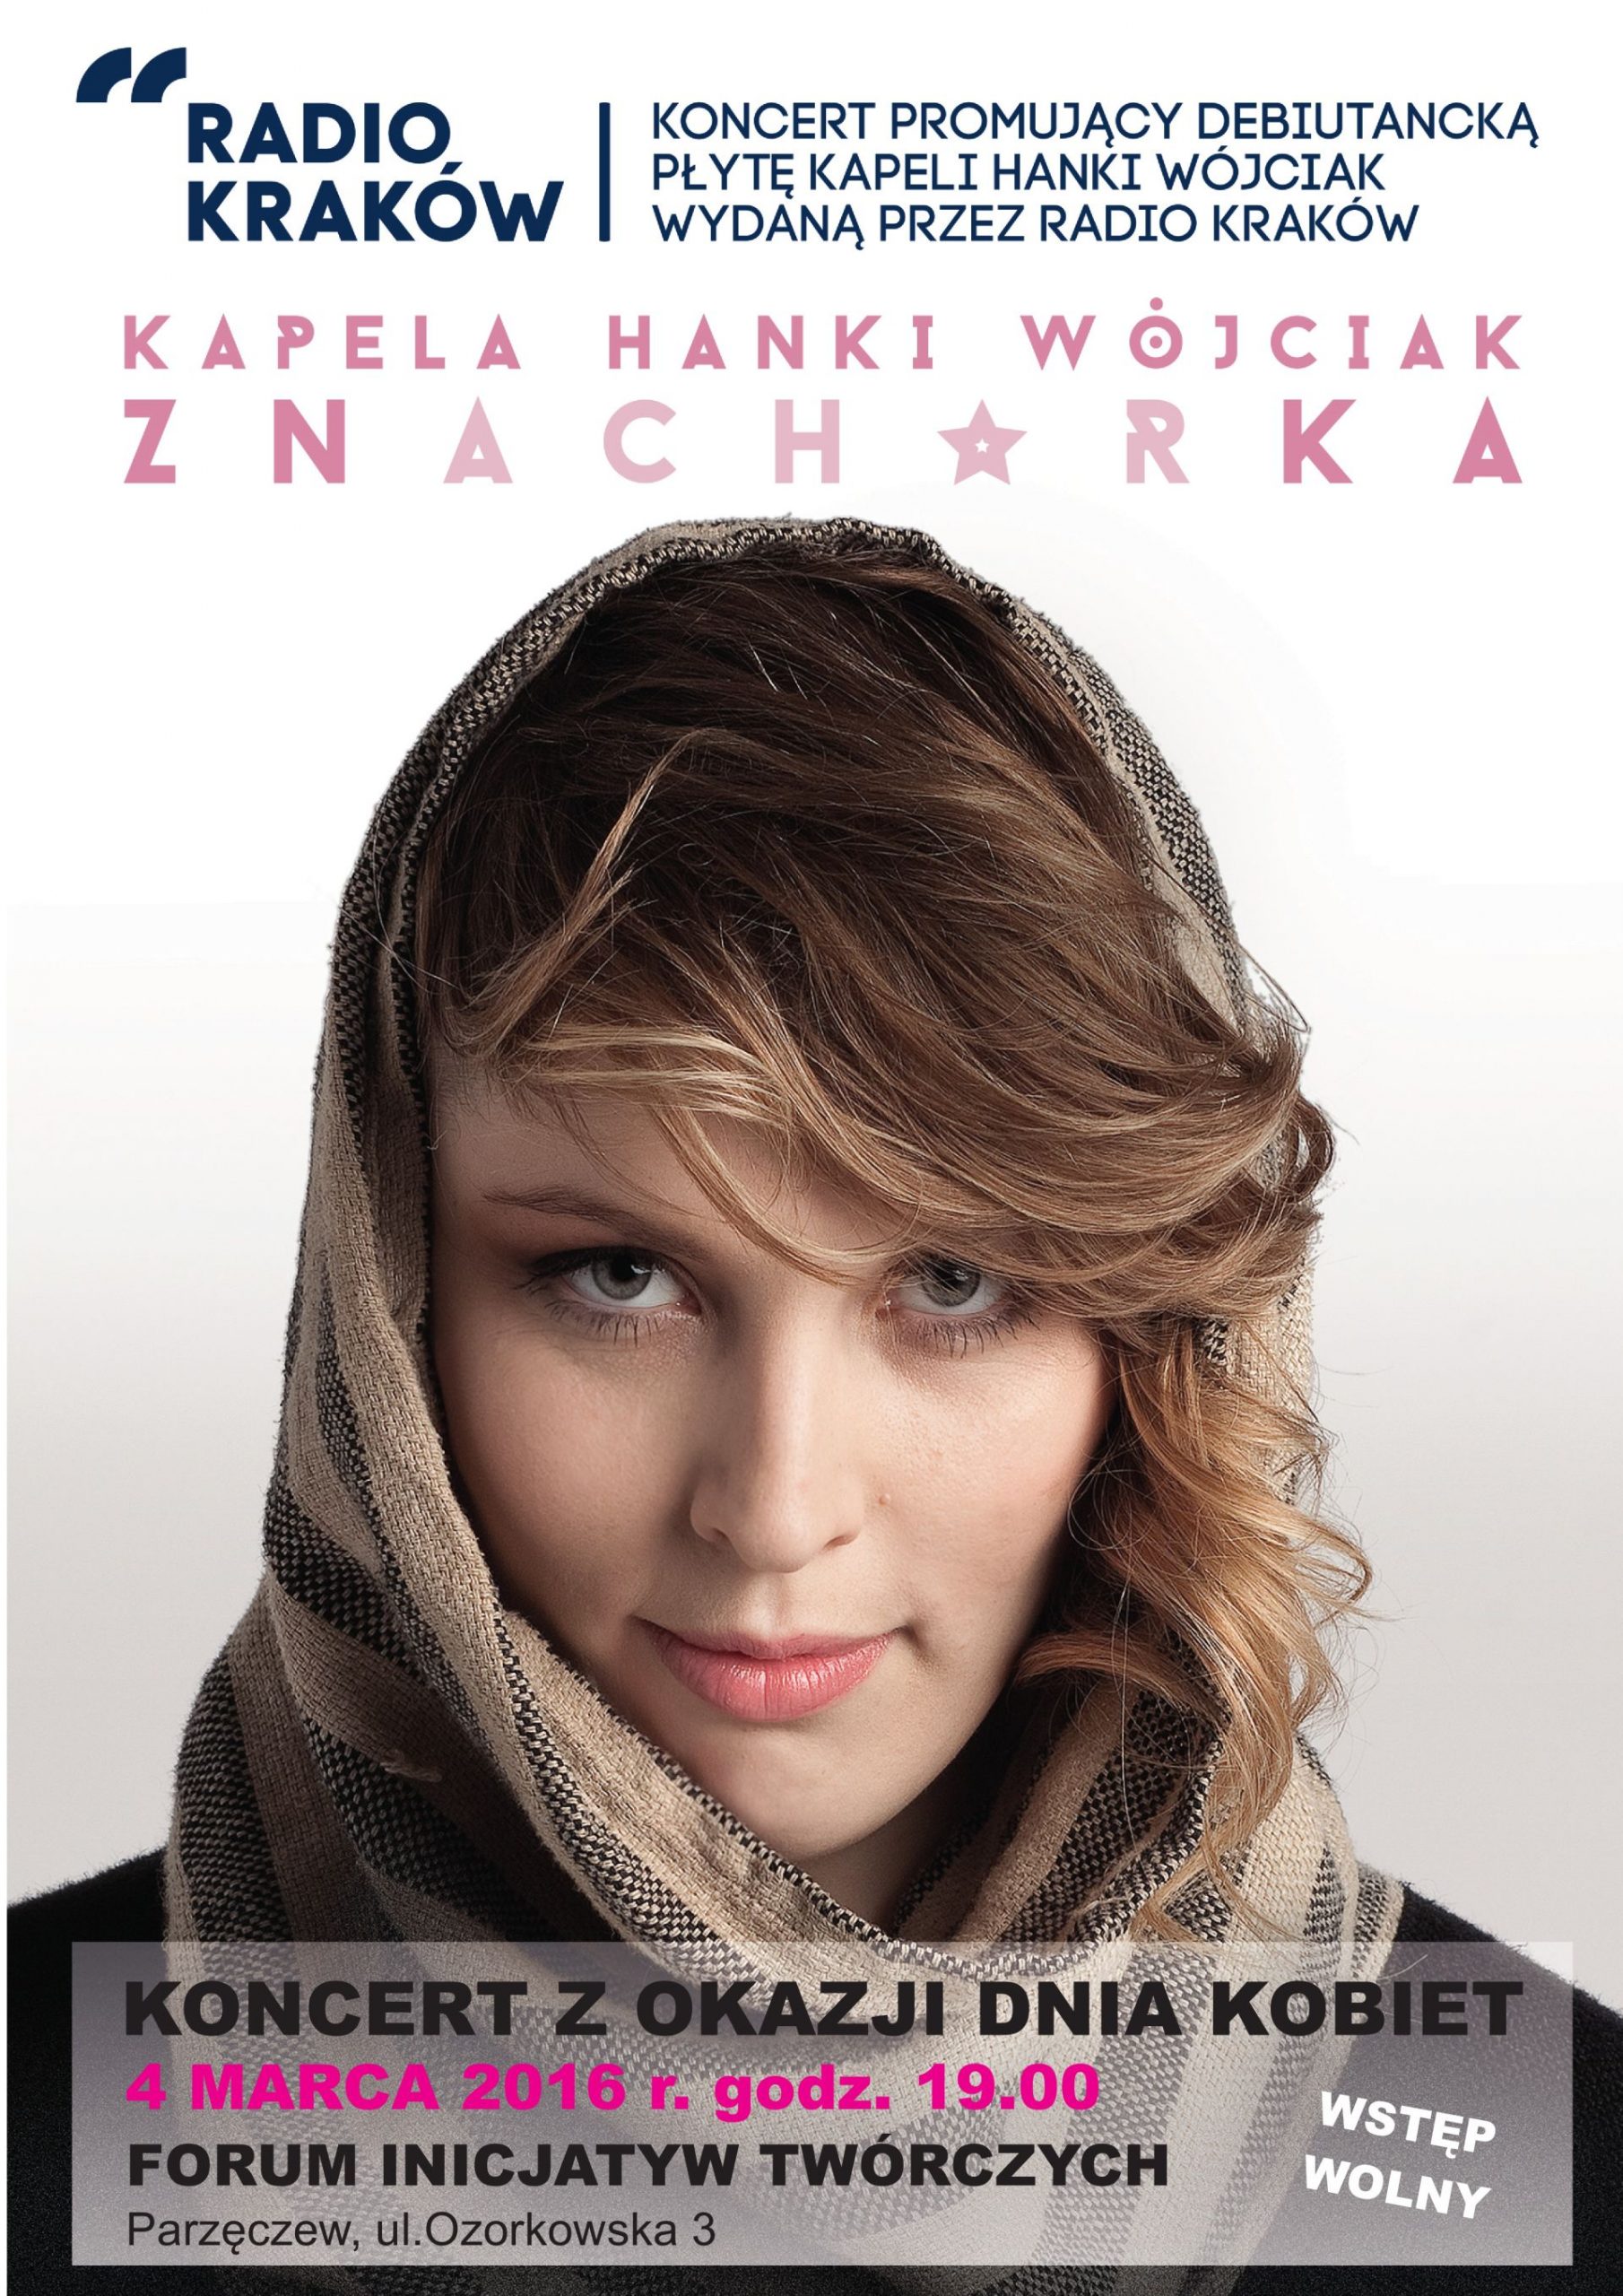 Plakat promujący koncert Kapeli Hanki Wójciak z okazji Dnia Kobiet w Forum Inicjatyw Twórczych w Parzęczeewie